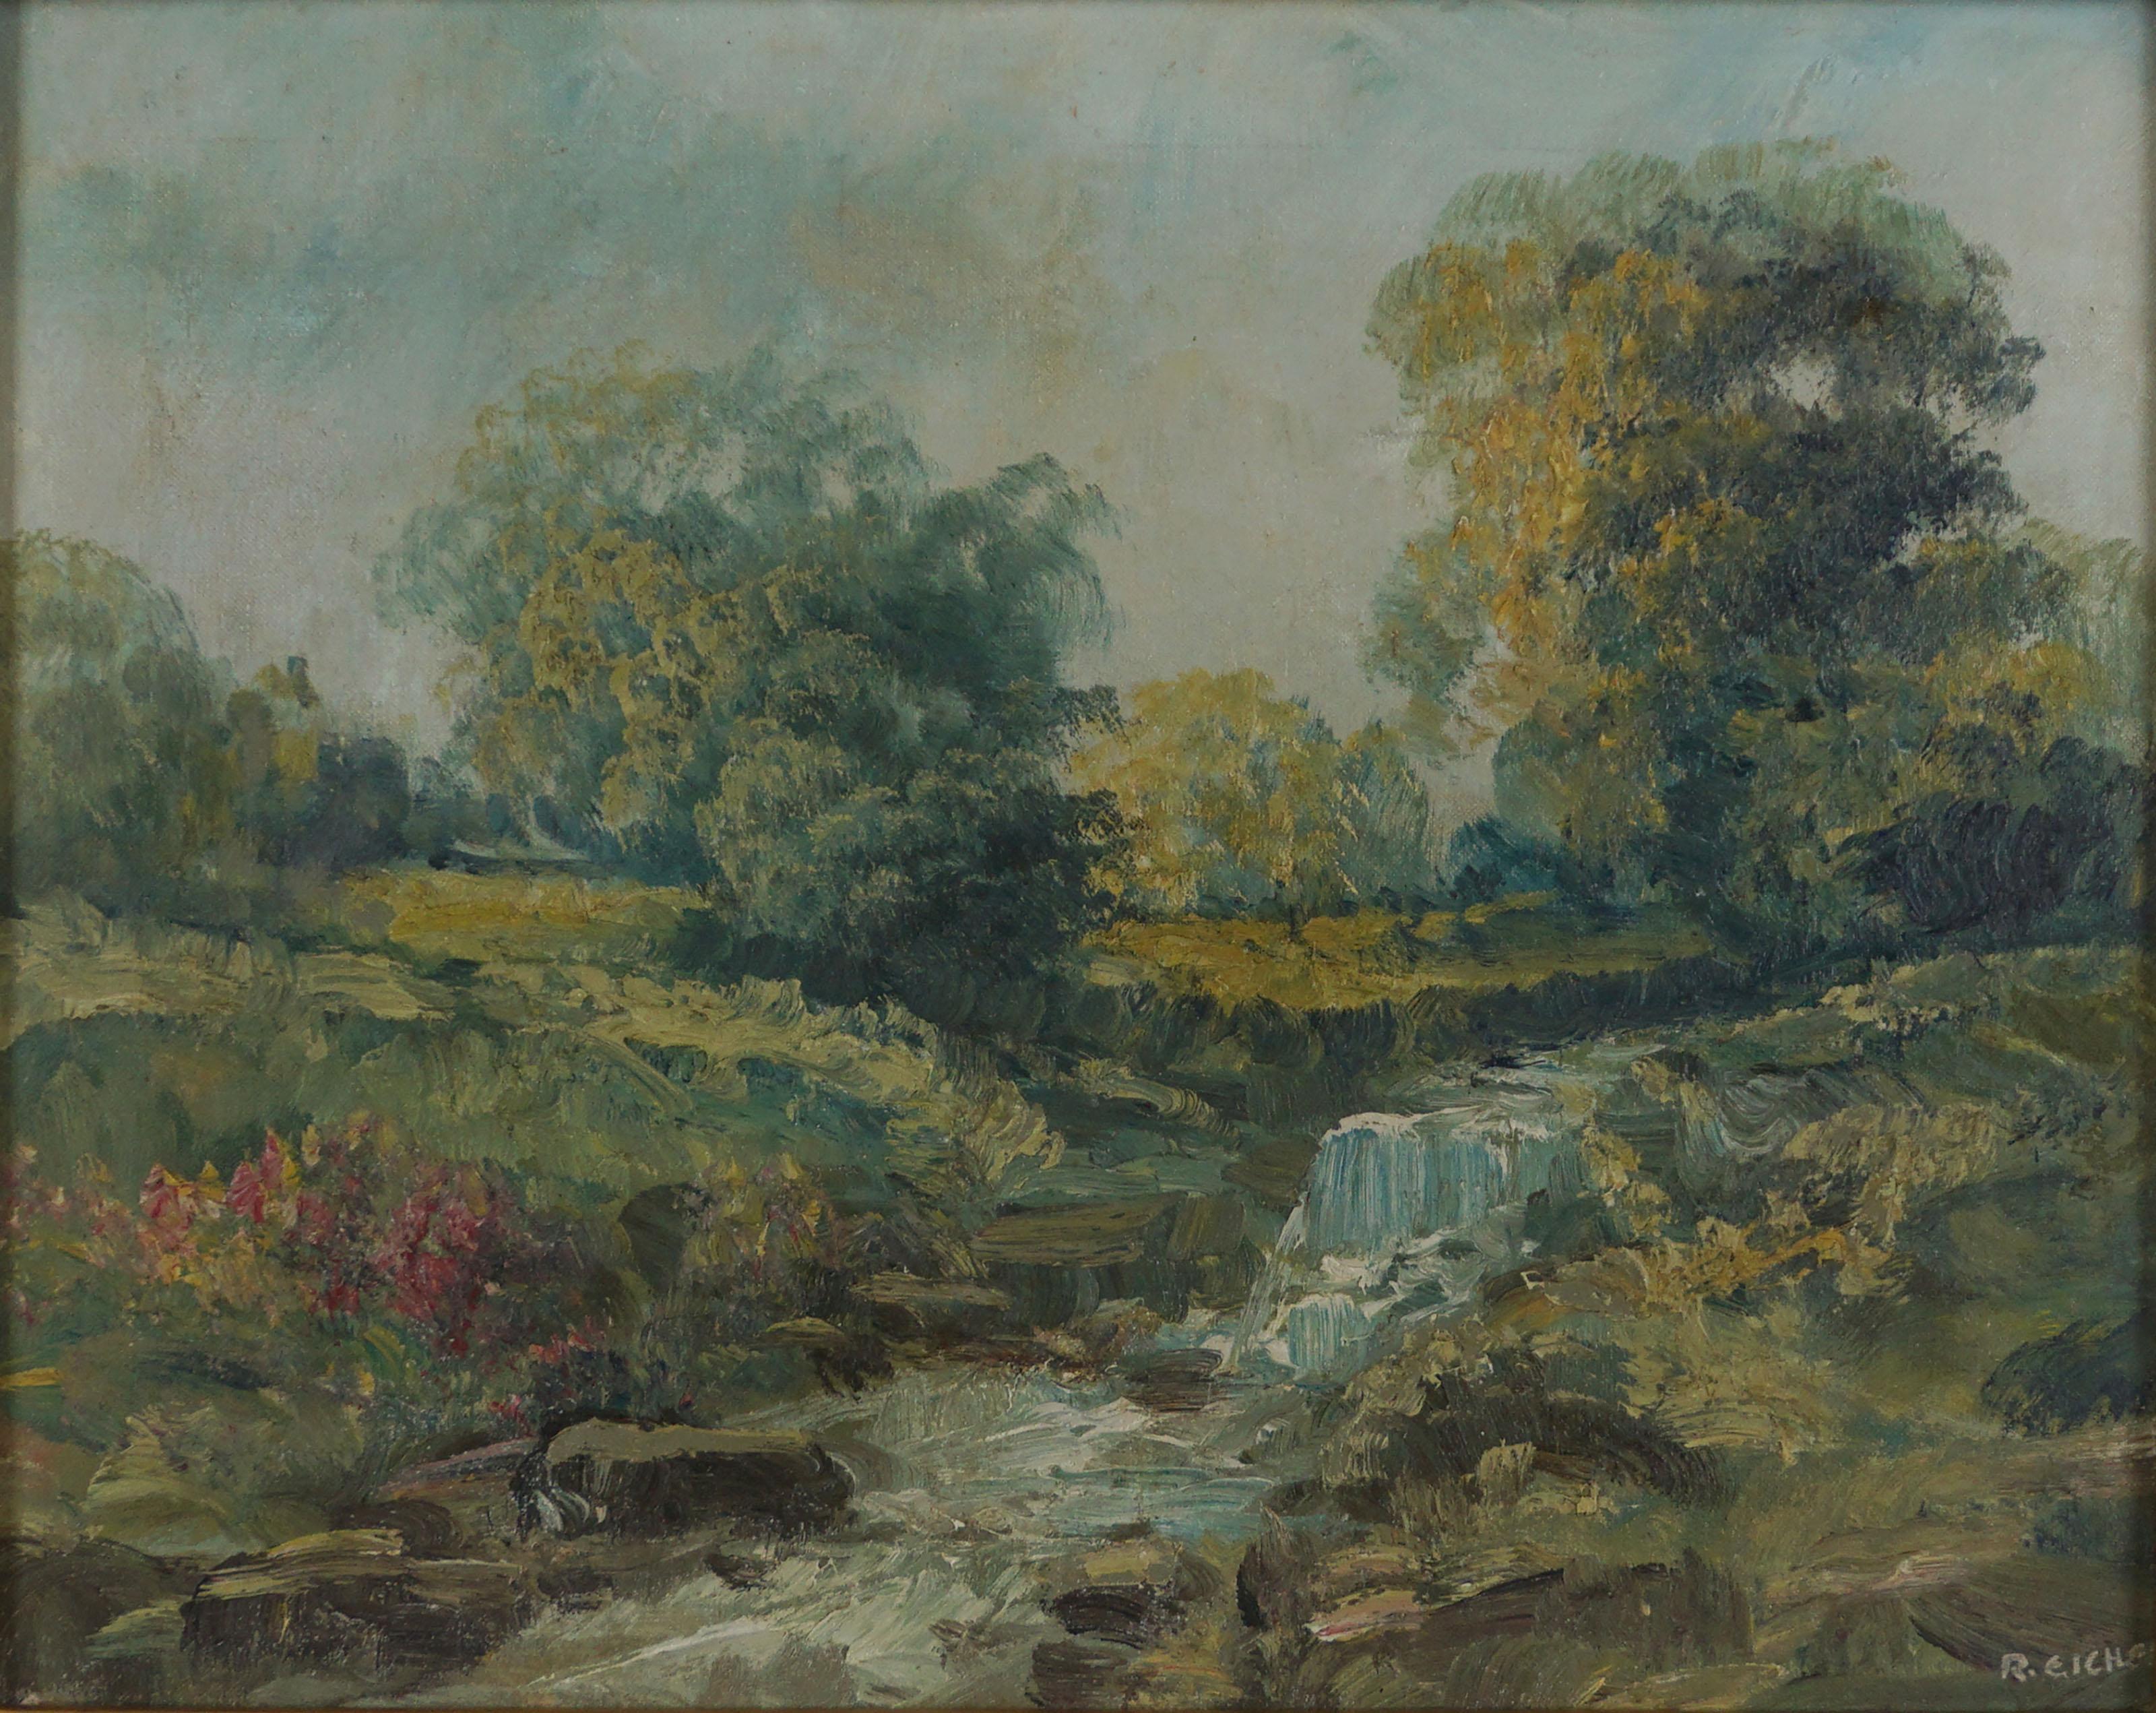 Impressionistische Original-Ölgemälde-Landschaft von Shongum, New Jersey, Mitte des 20. Jahrhunderts (Amerikanischer Impressionismus), Painting, von Rudolph Eicher